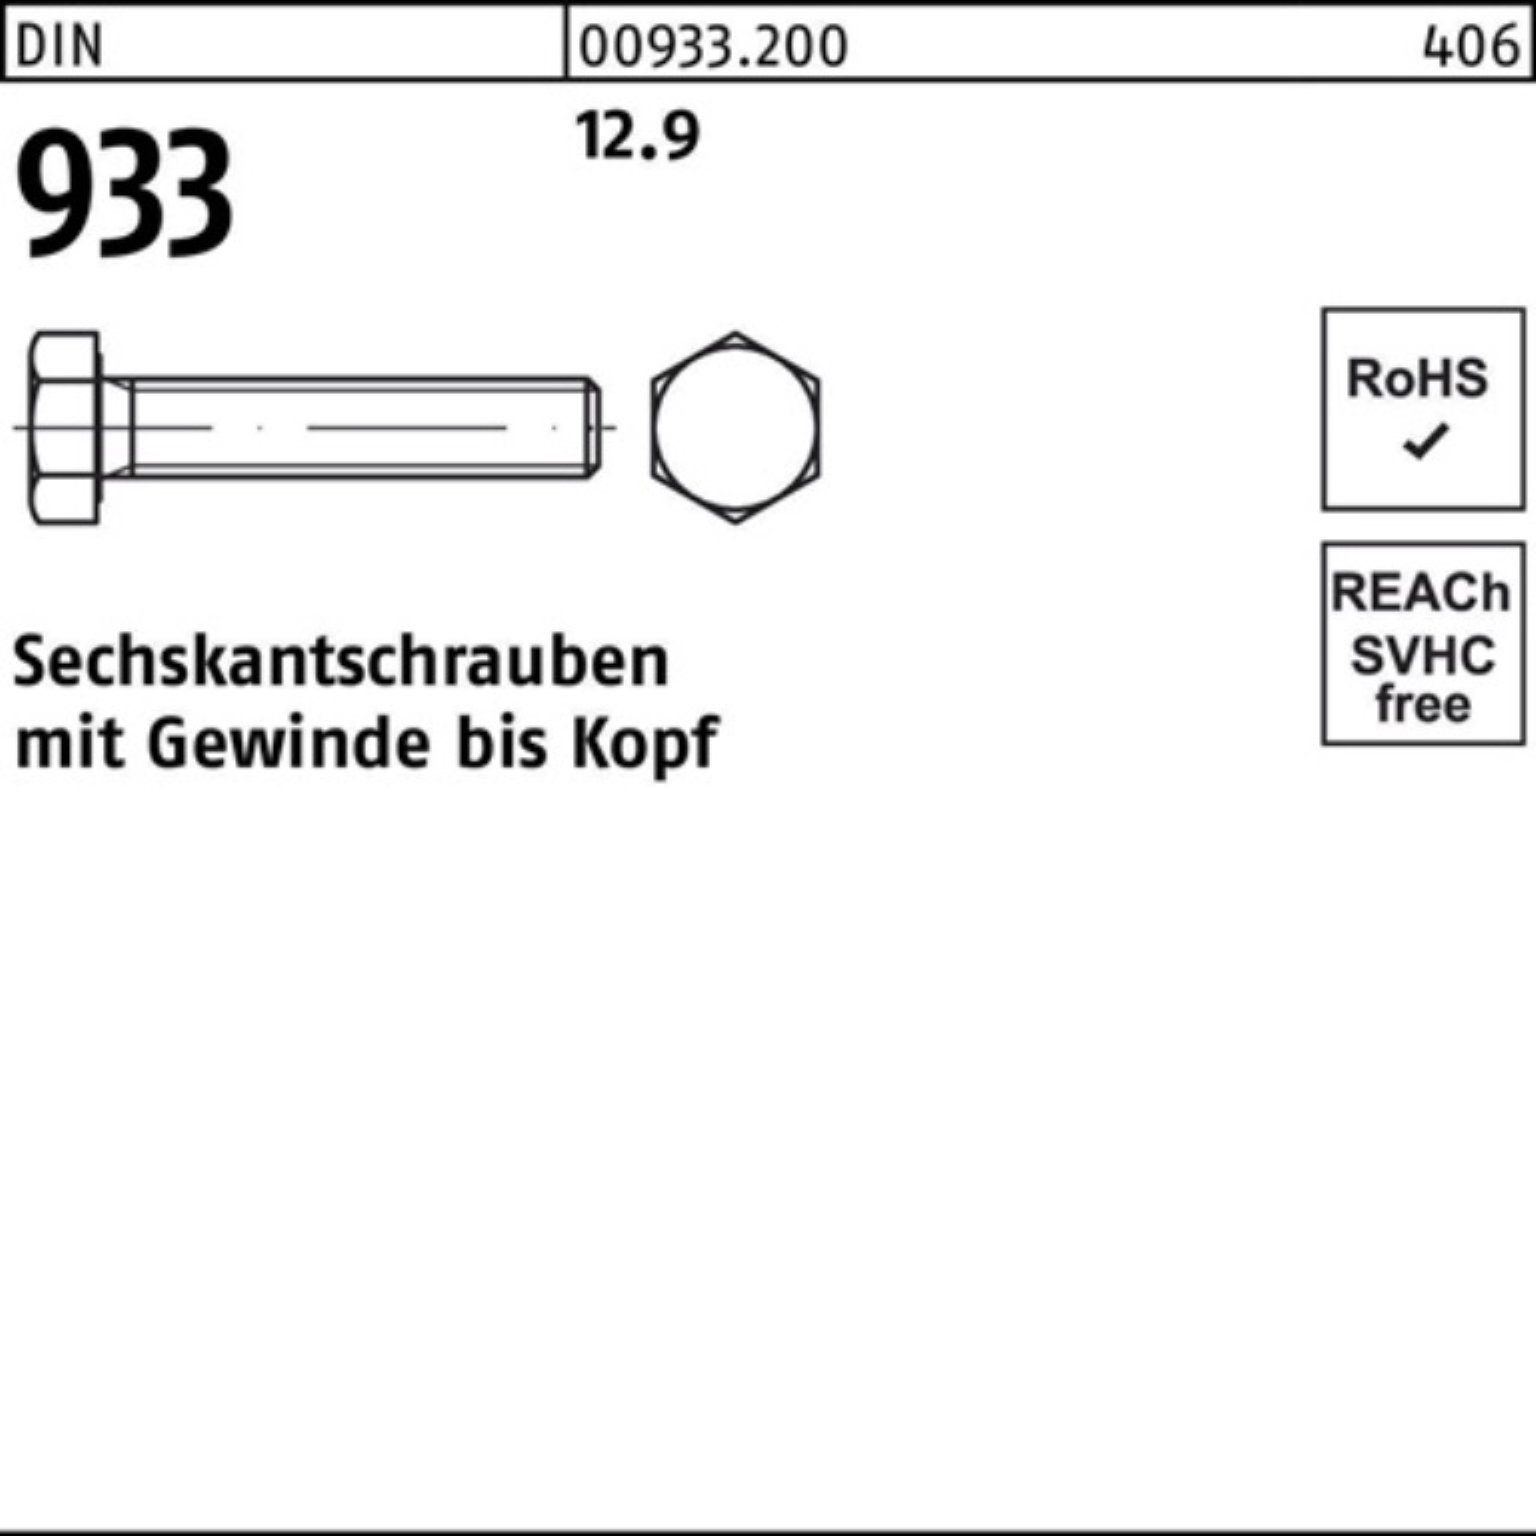 Reyher Sechskantschraube 200er Pack Sechskantschraube 40 M8x 933 DIN DIN 200 12.9 933 Stück VG